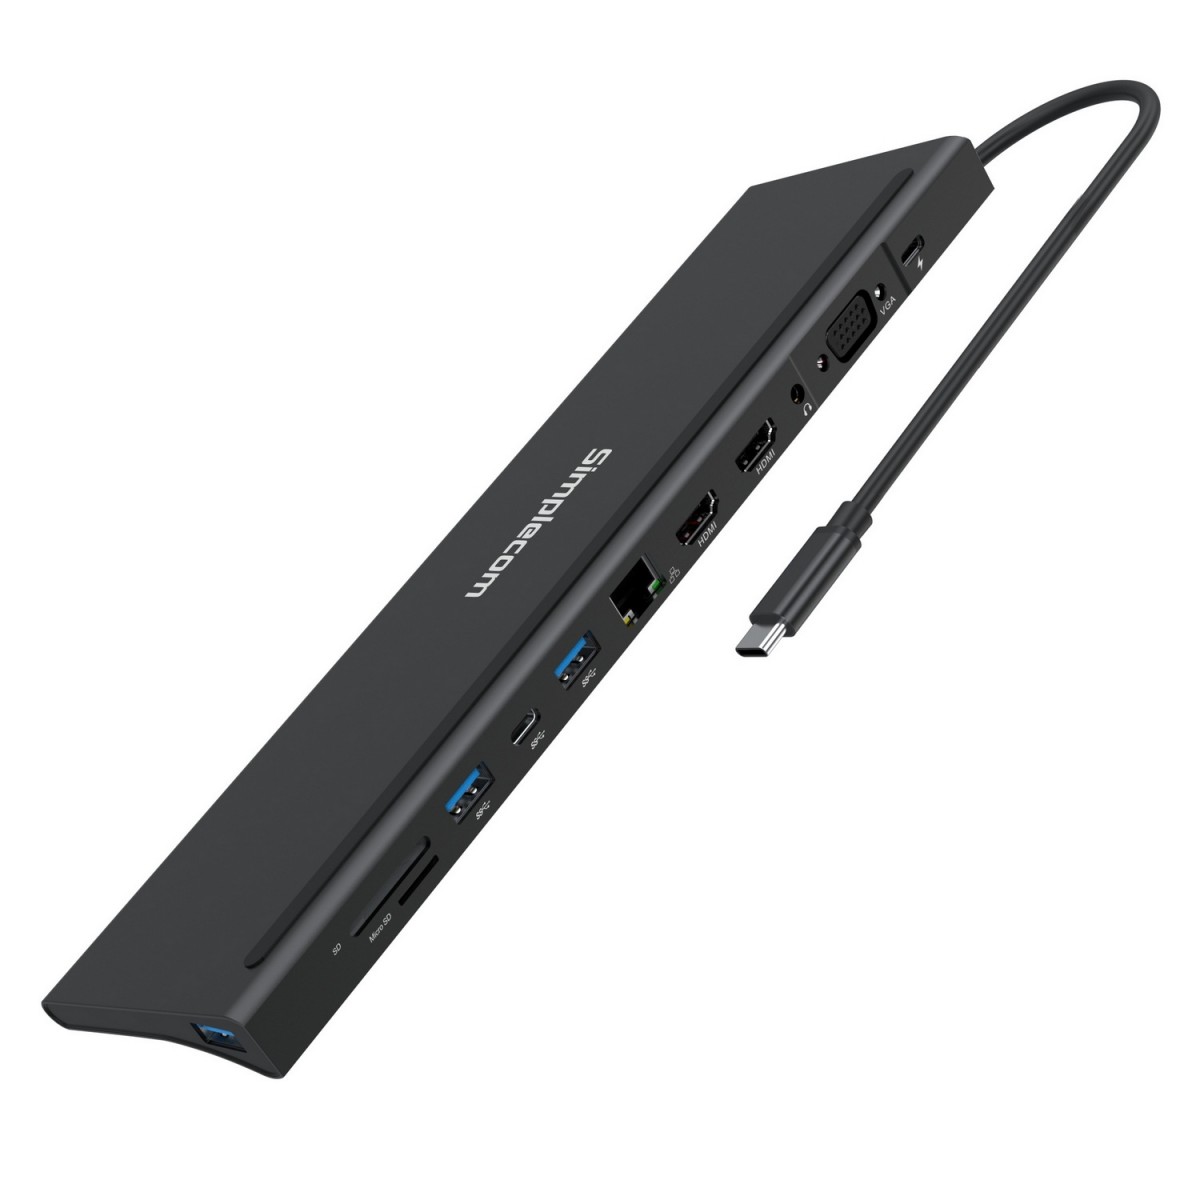  USB-C Type-C 12-in-1 Multiport Docking Station Laptop Stand Dual HDMI + VGA Triple Display Gigabit LAN  